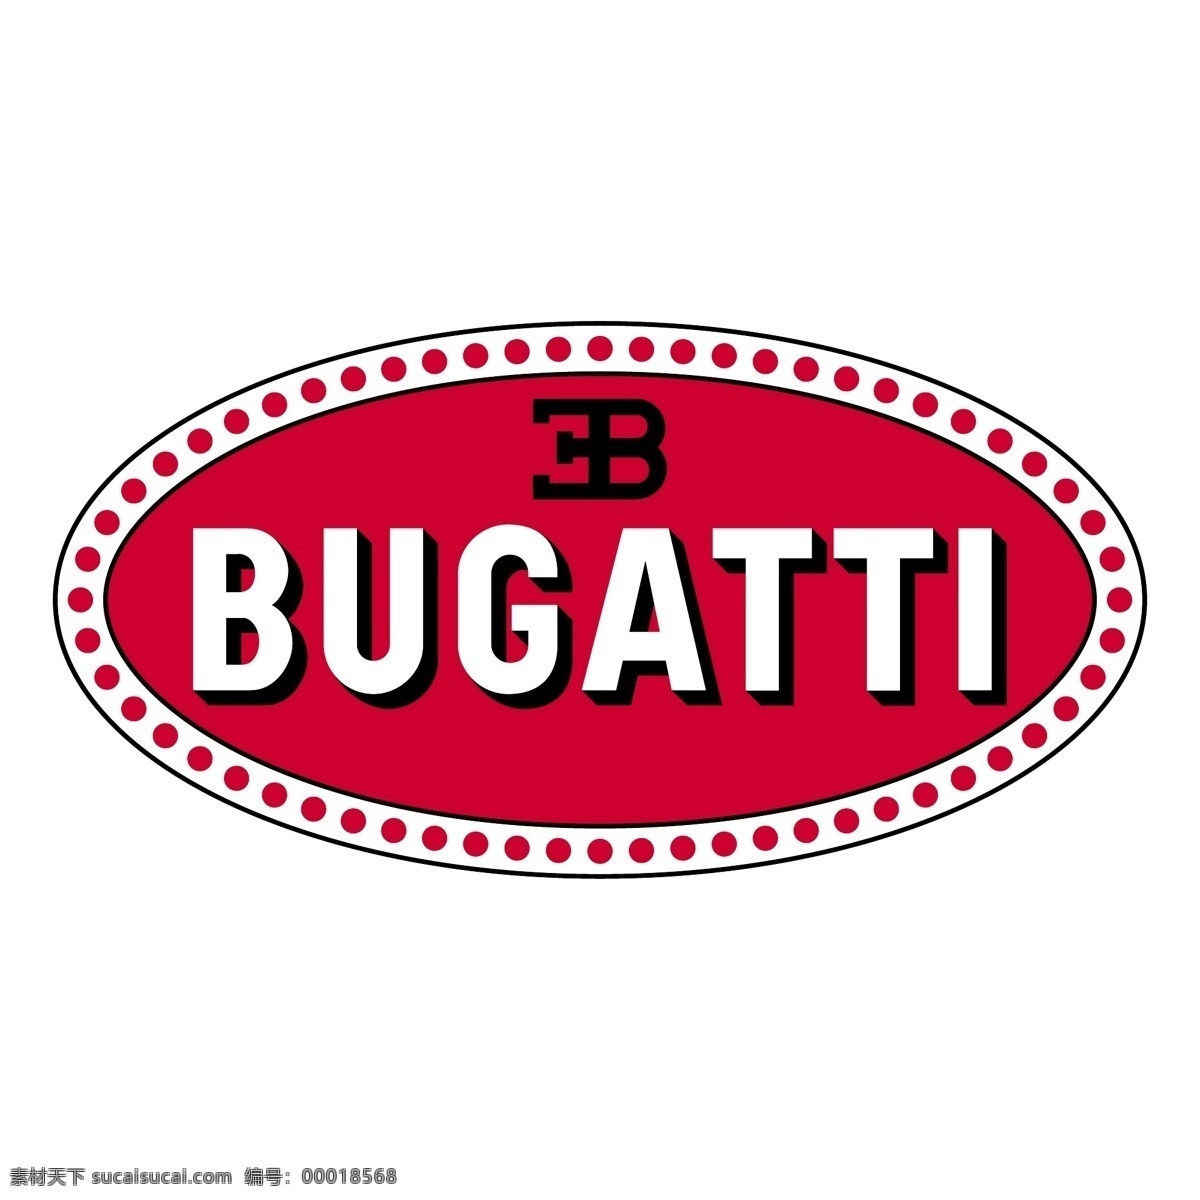 bugatti 布 加迪 汽车 企业 logo 标志 标识标志图标 矢量